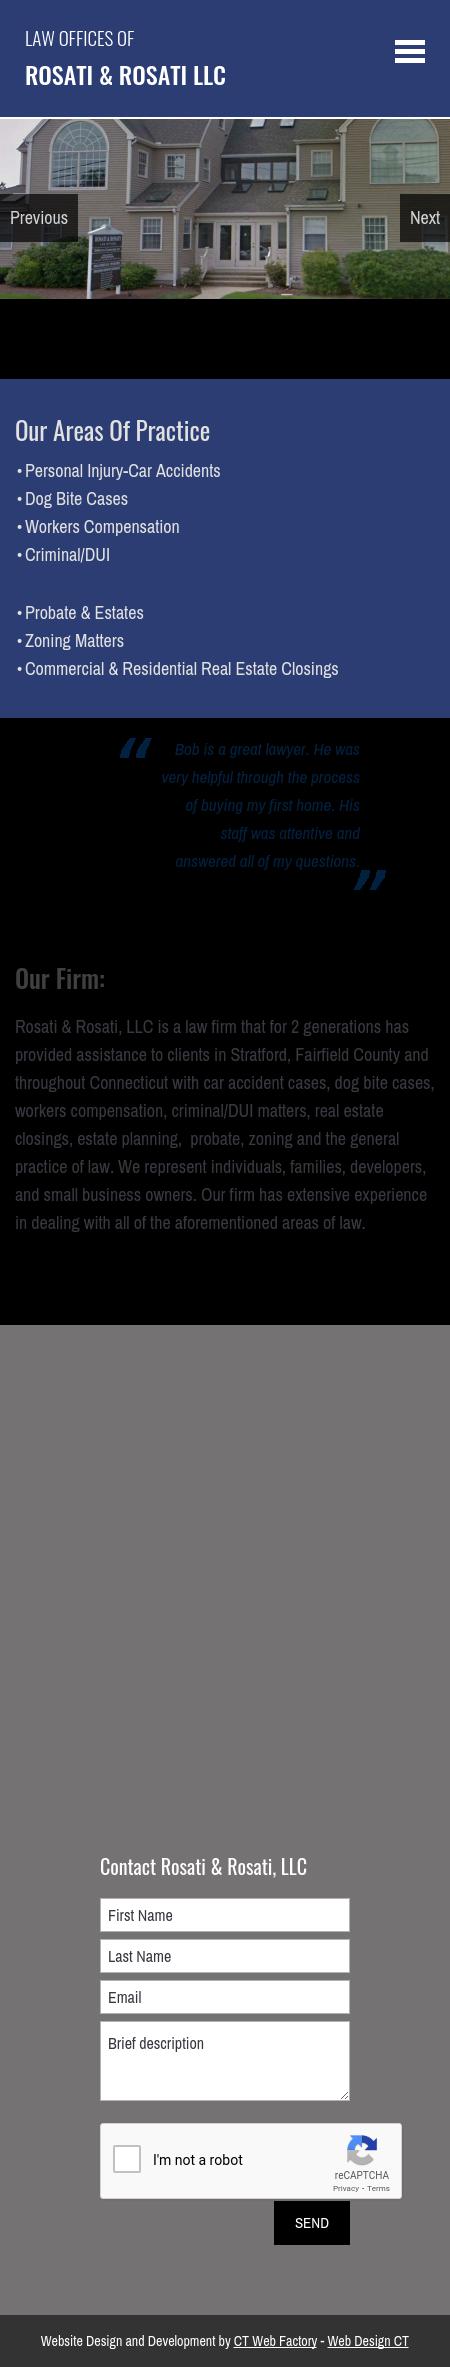 Rosati & Rosati LLC - Stratford CT Lawyers